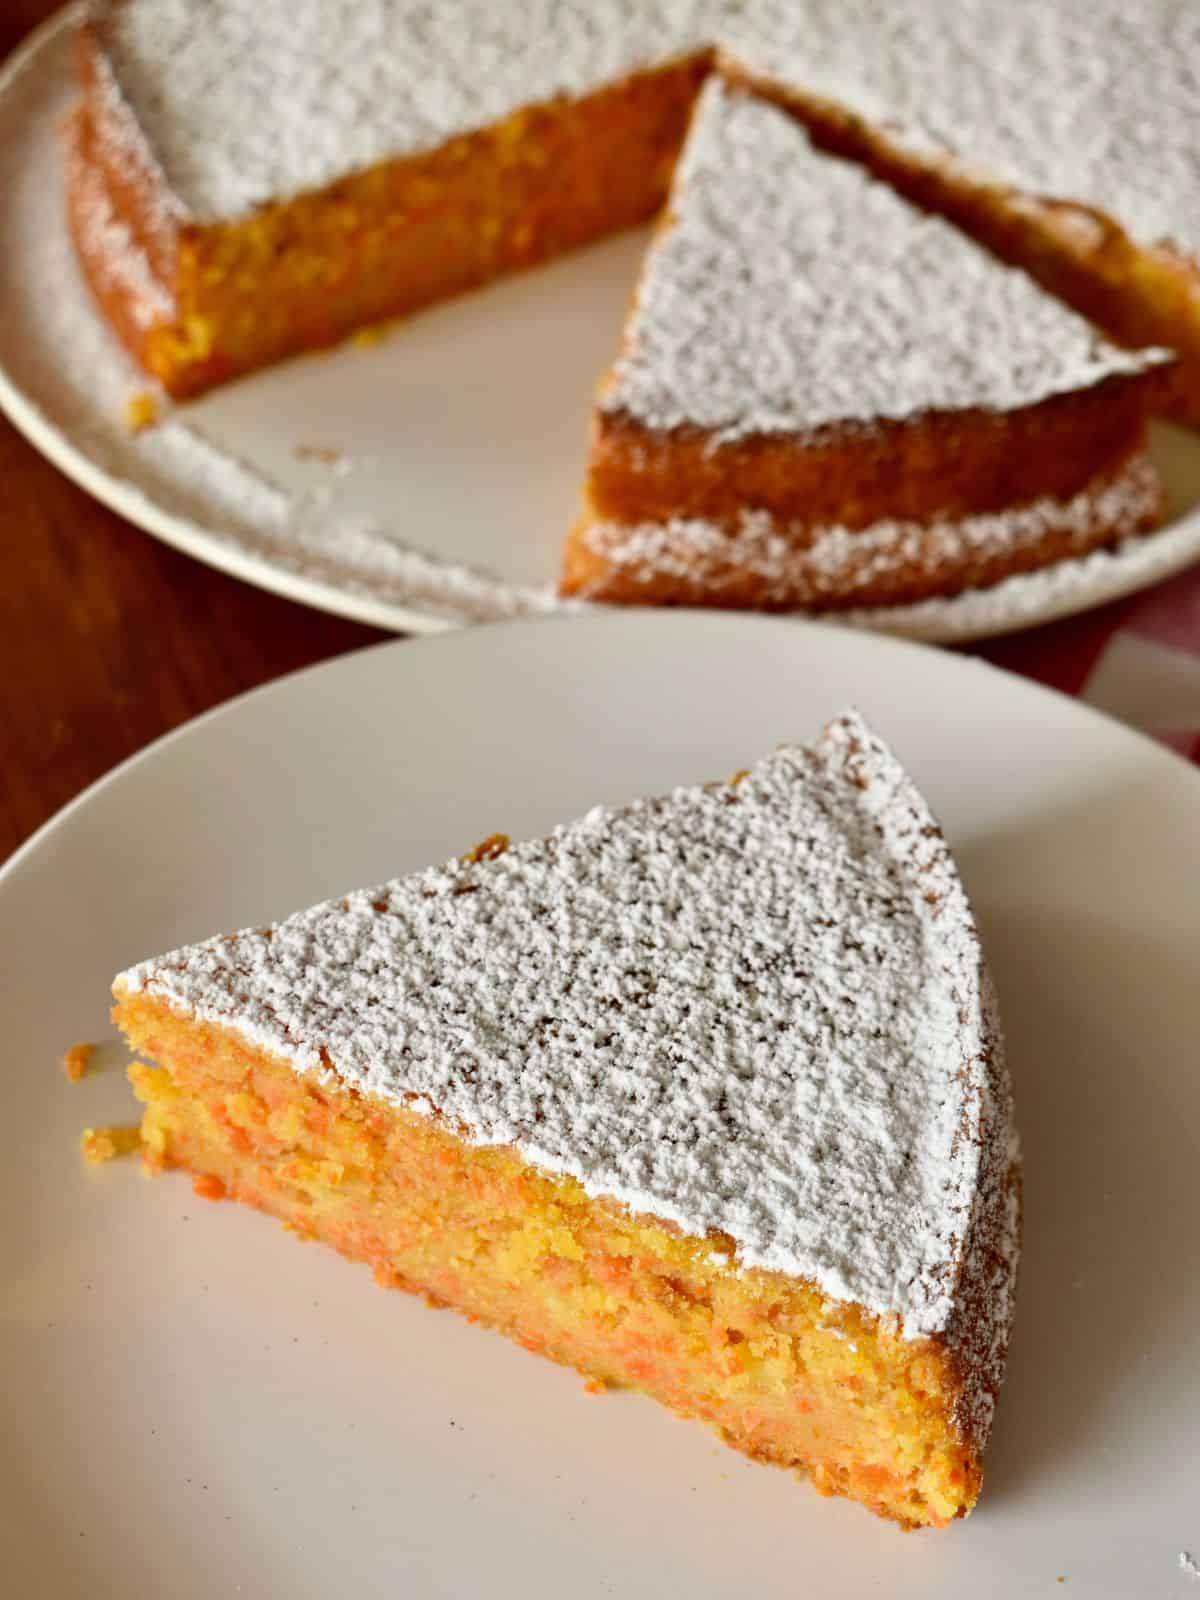 Italian Carrot Cake or torta di carote on a plate. 